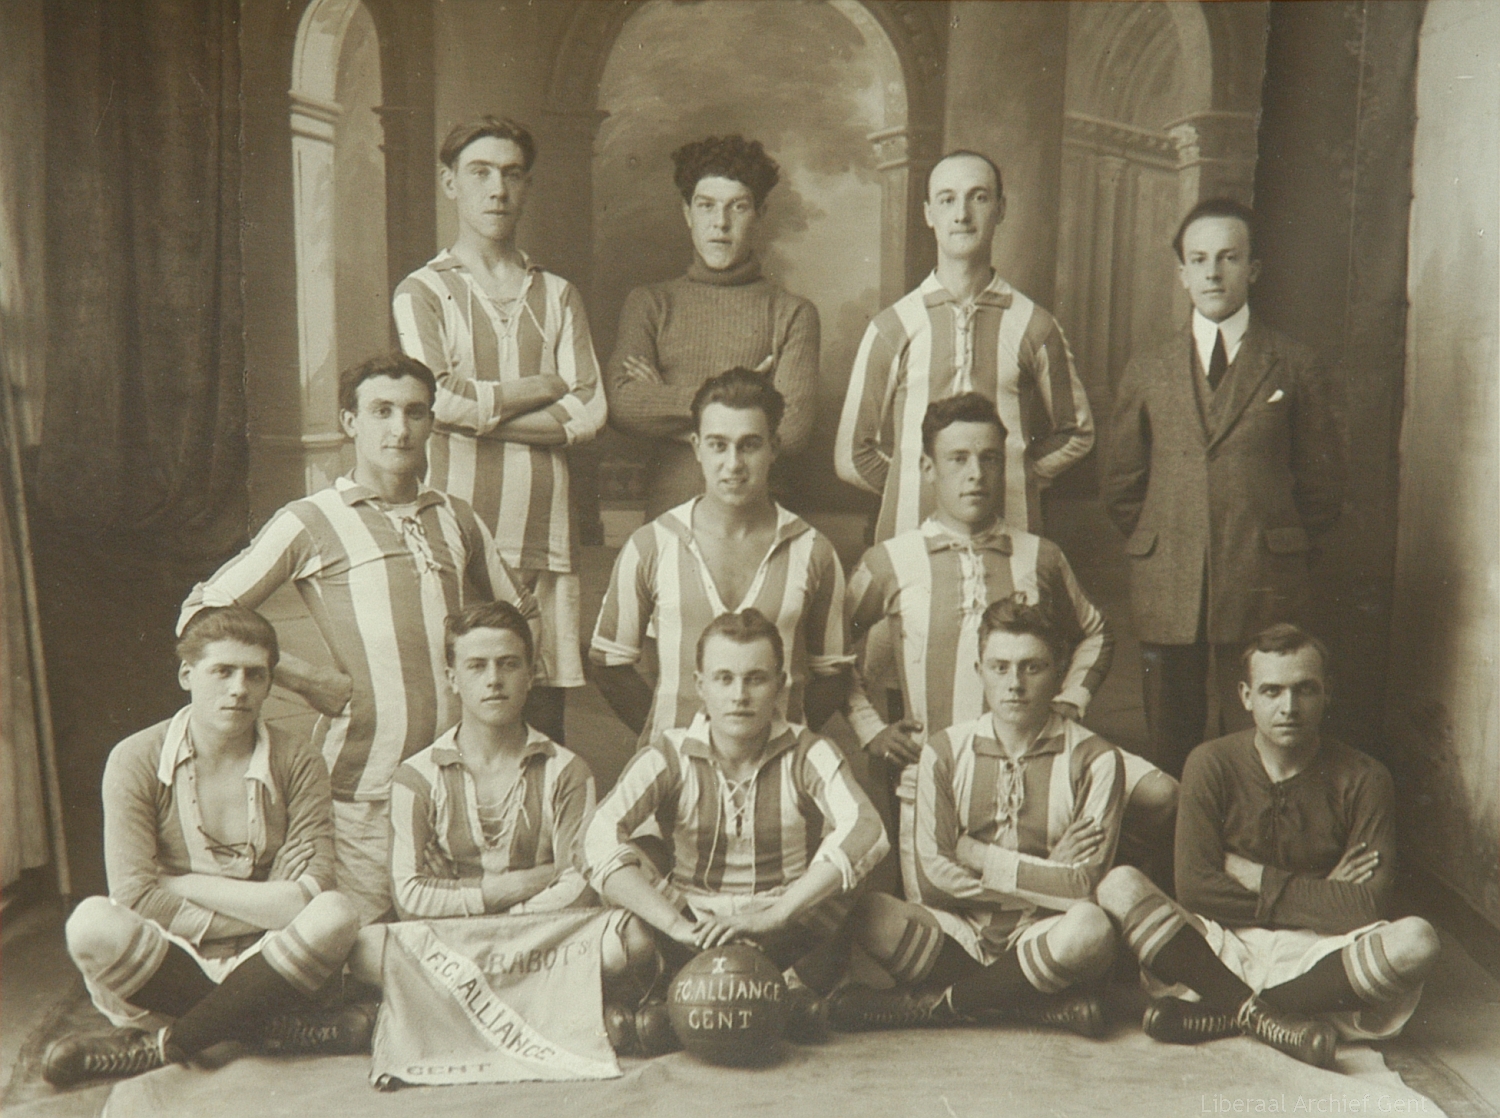 Voetbal team Liberale Kring van Rabot en Brugsepoort, Gent, 1924